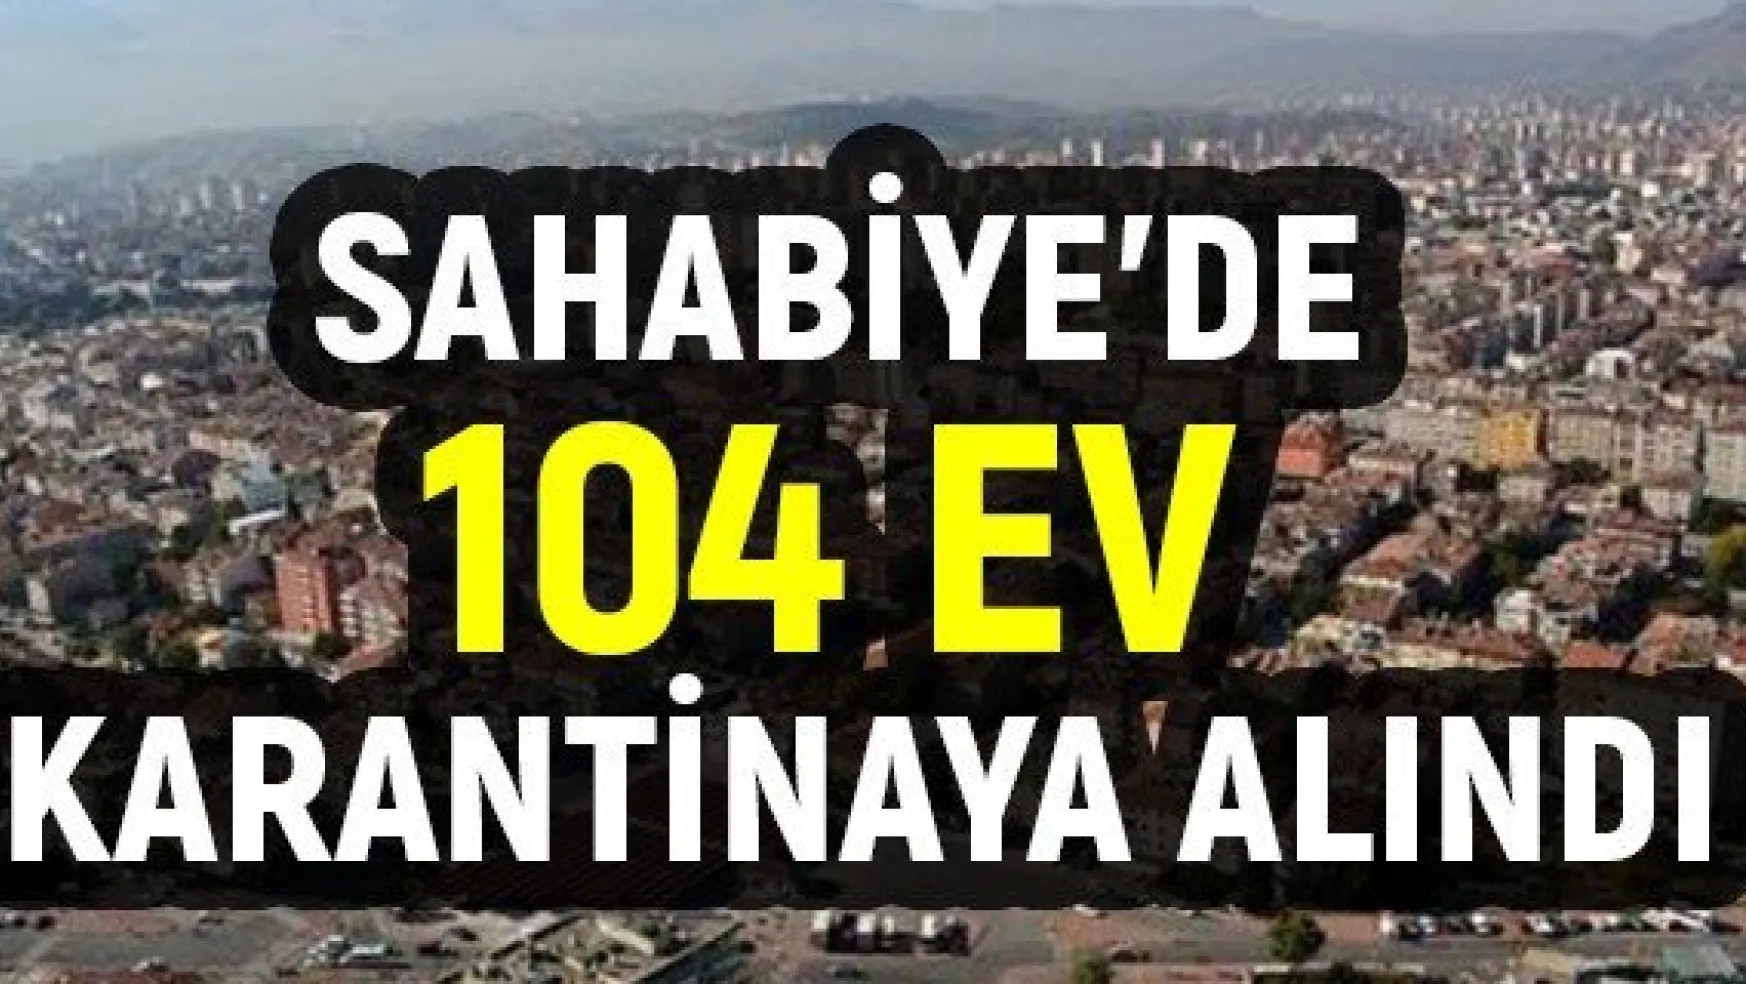 Sahabiye'de 104 ev karantinaya alındı